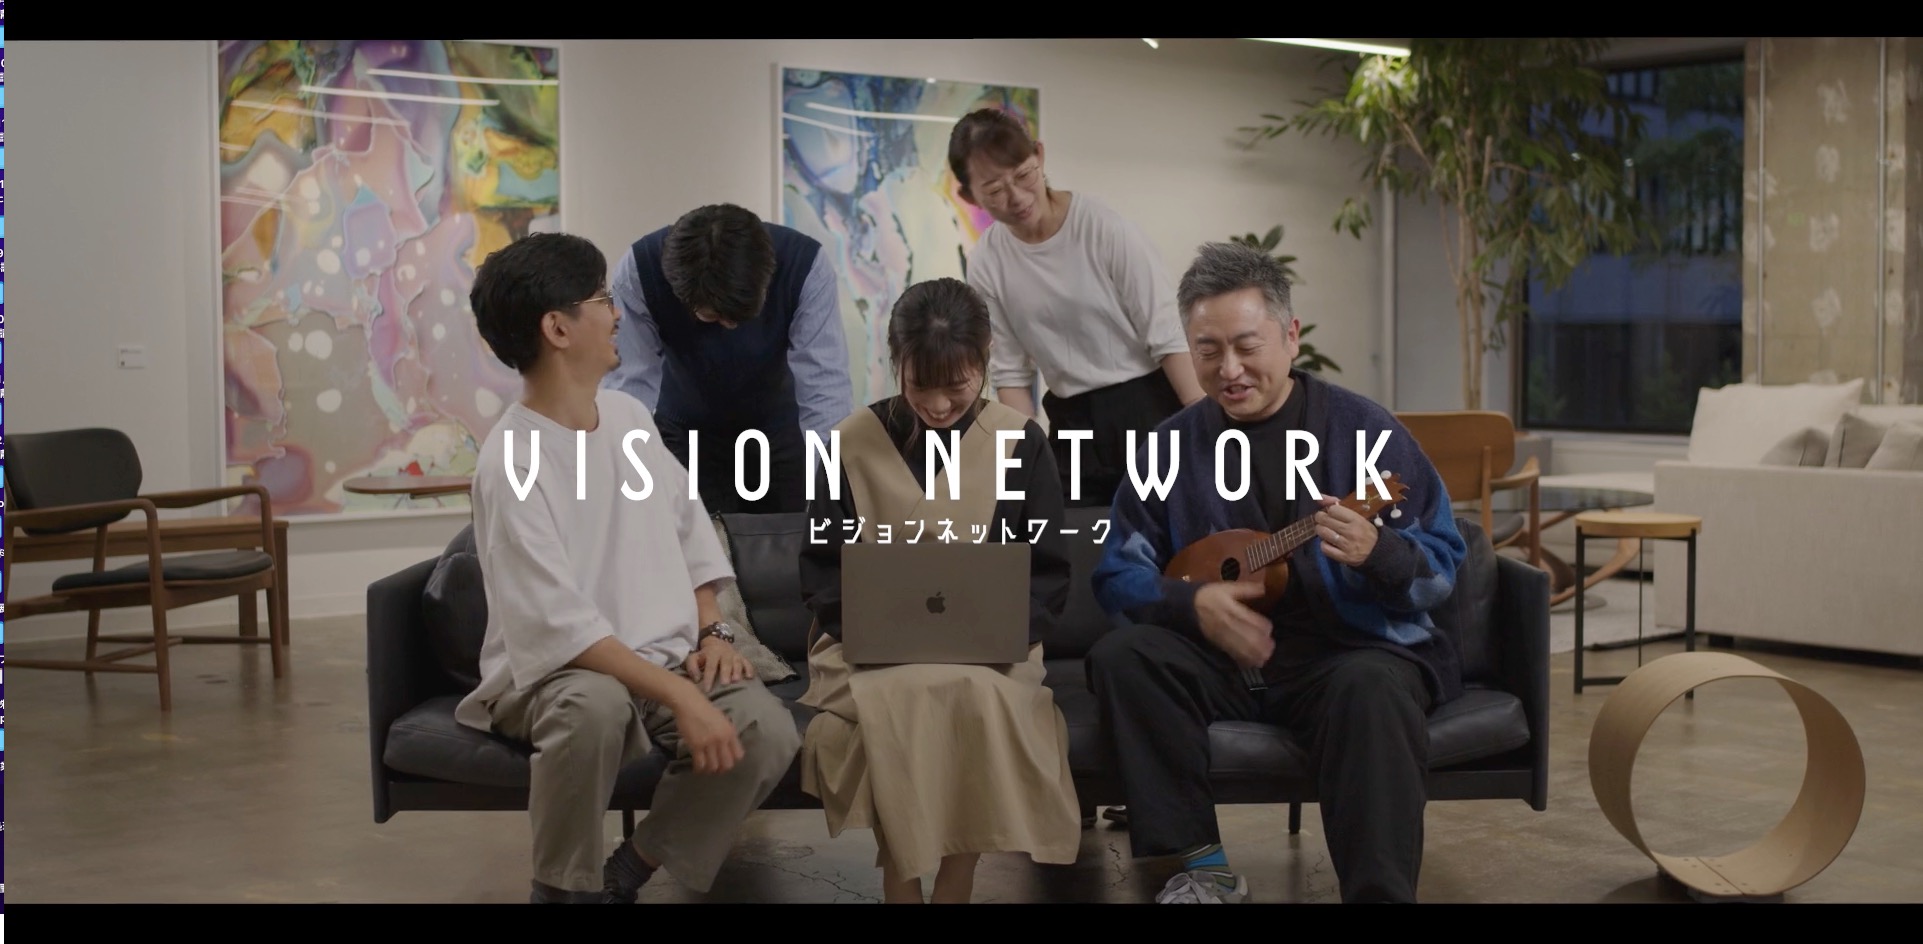 【コクヨ様】企業として5年後10年後に向かう未来へのコクヨのヨコクを表現した動画です！